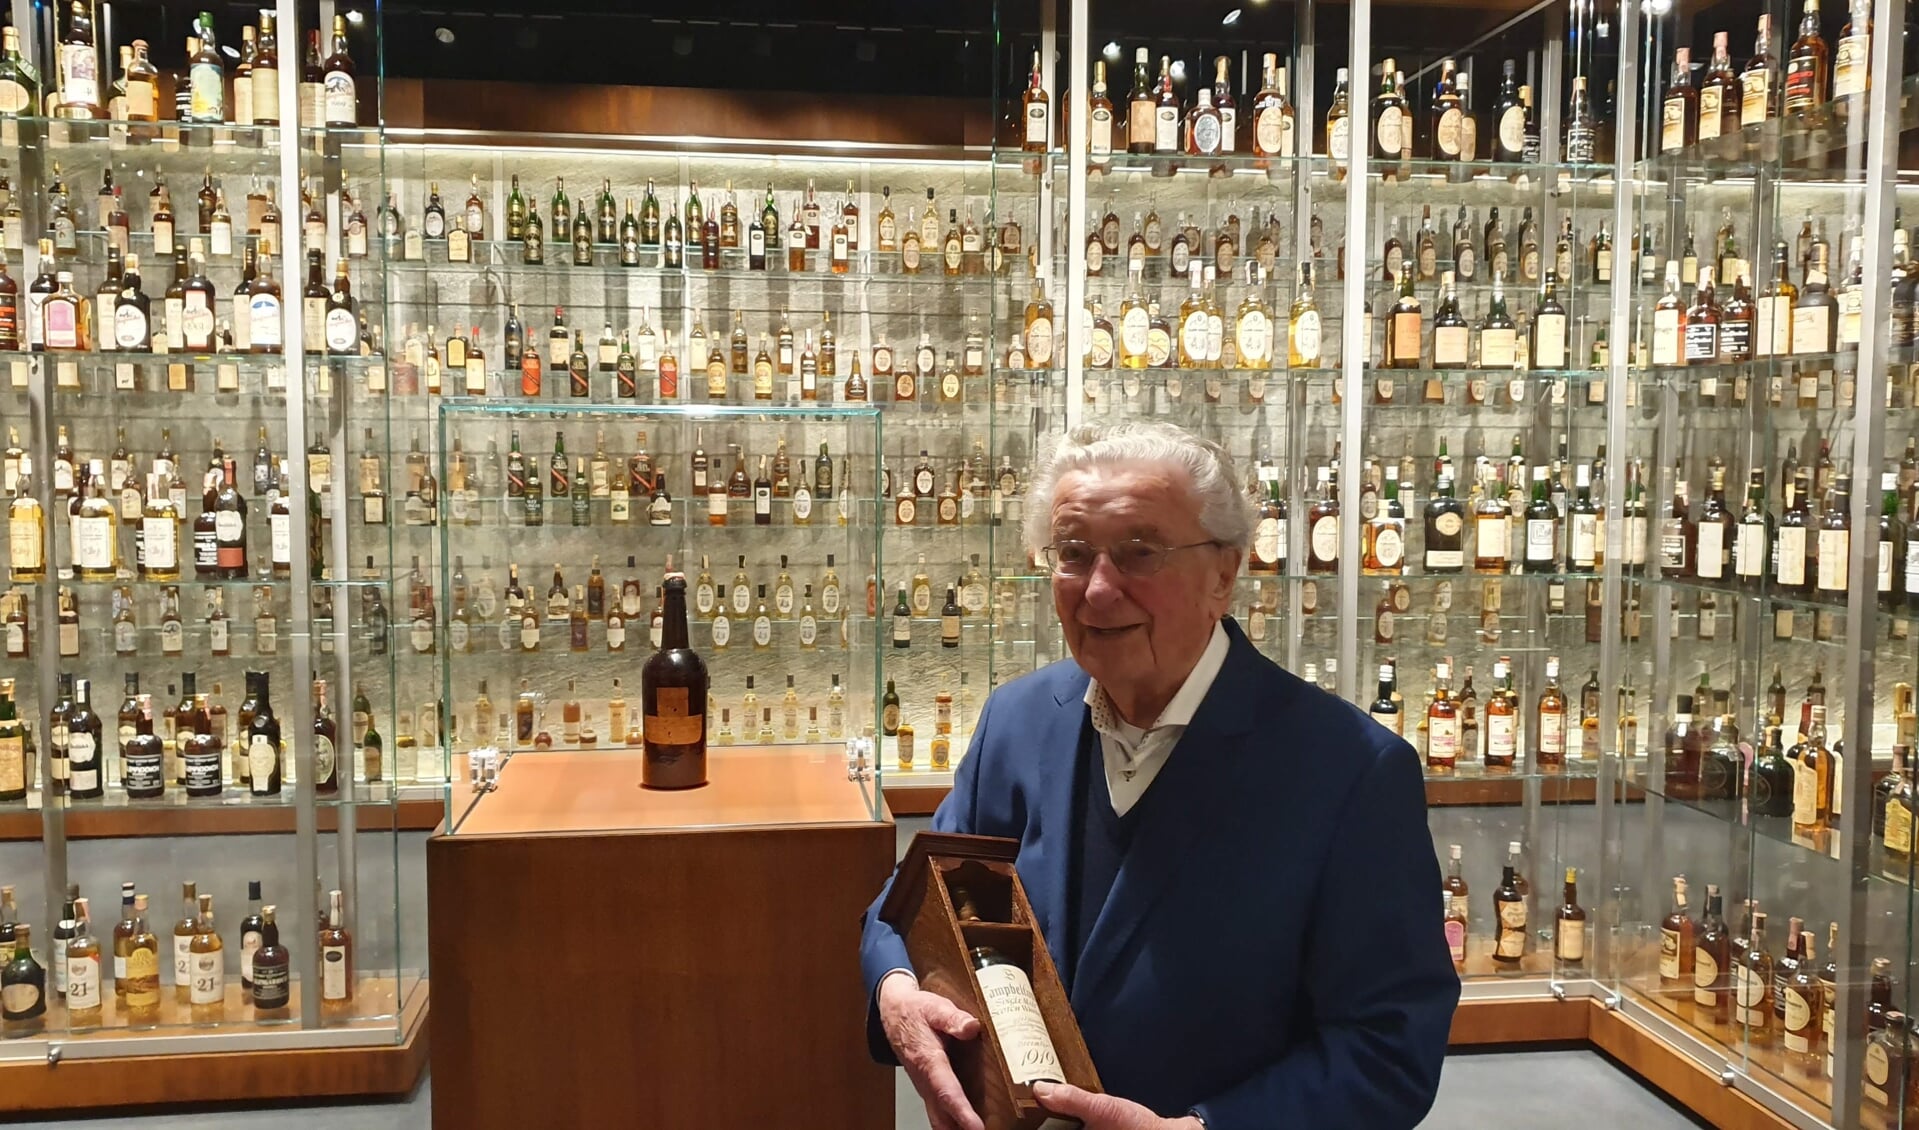 Meneer Montagne koestert de 100-jarige fles whisky. Een soortgelijke fles werd geveild voor ruim 310.000 euro!